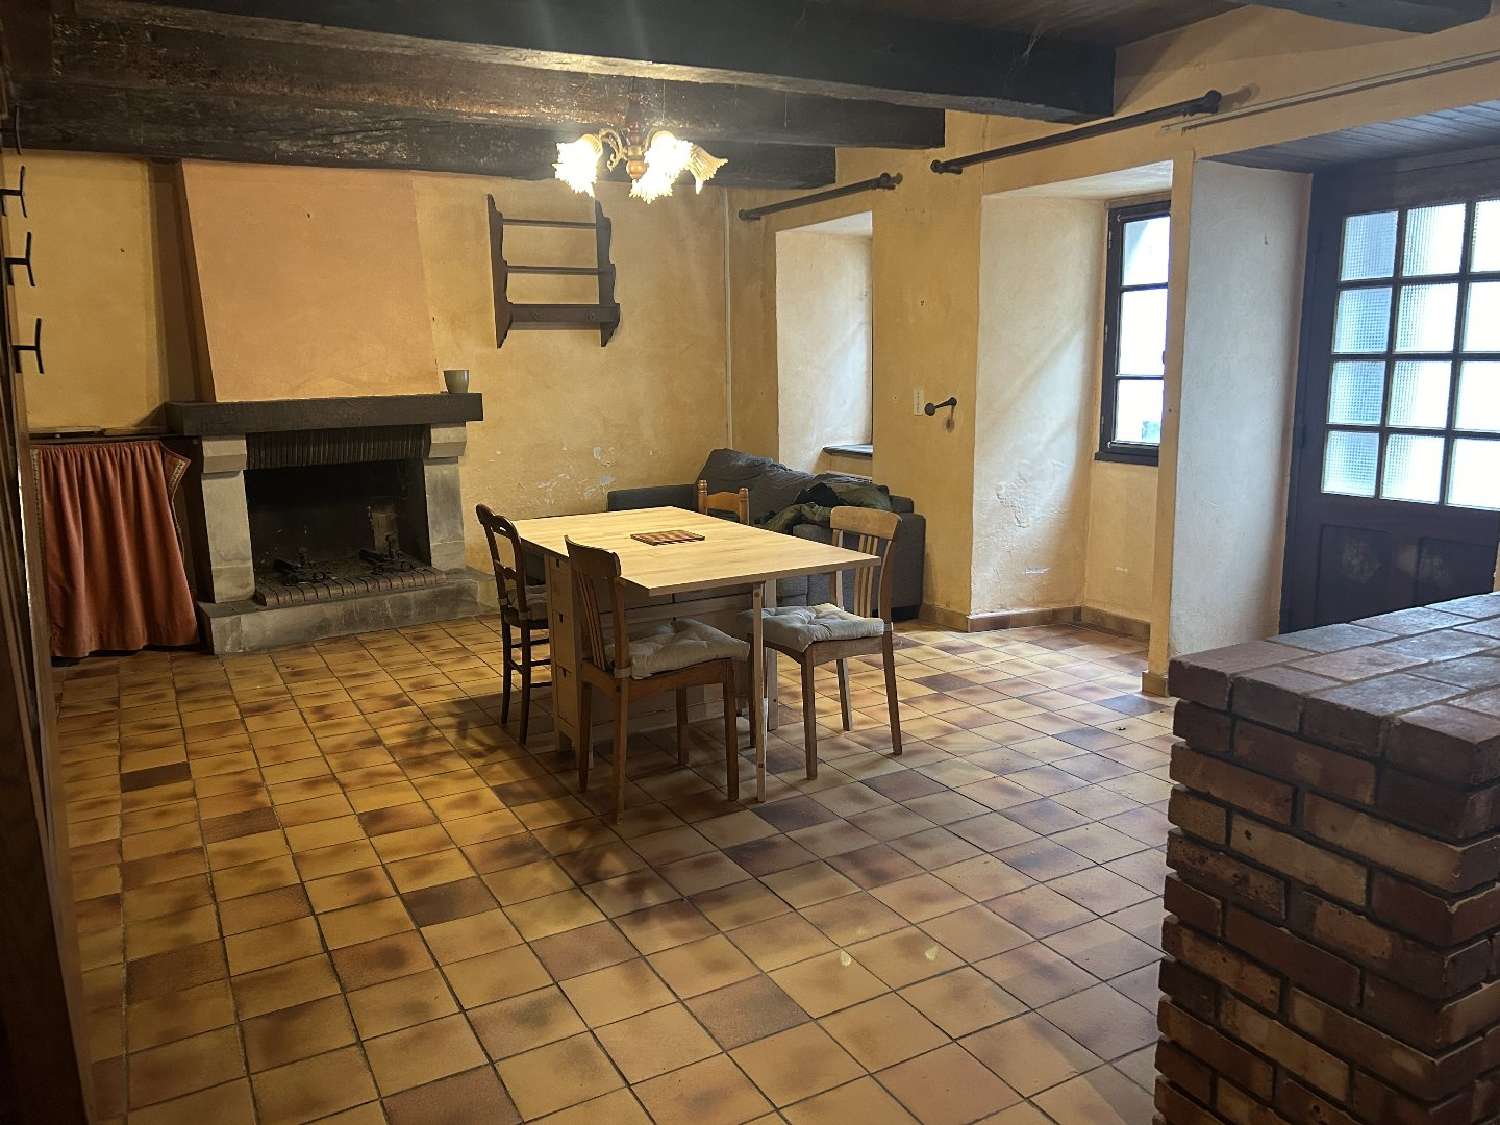  à vendre maison de village Lédergues Aveyron 2